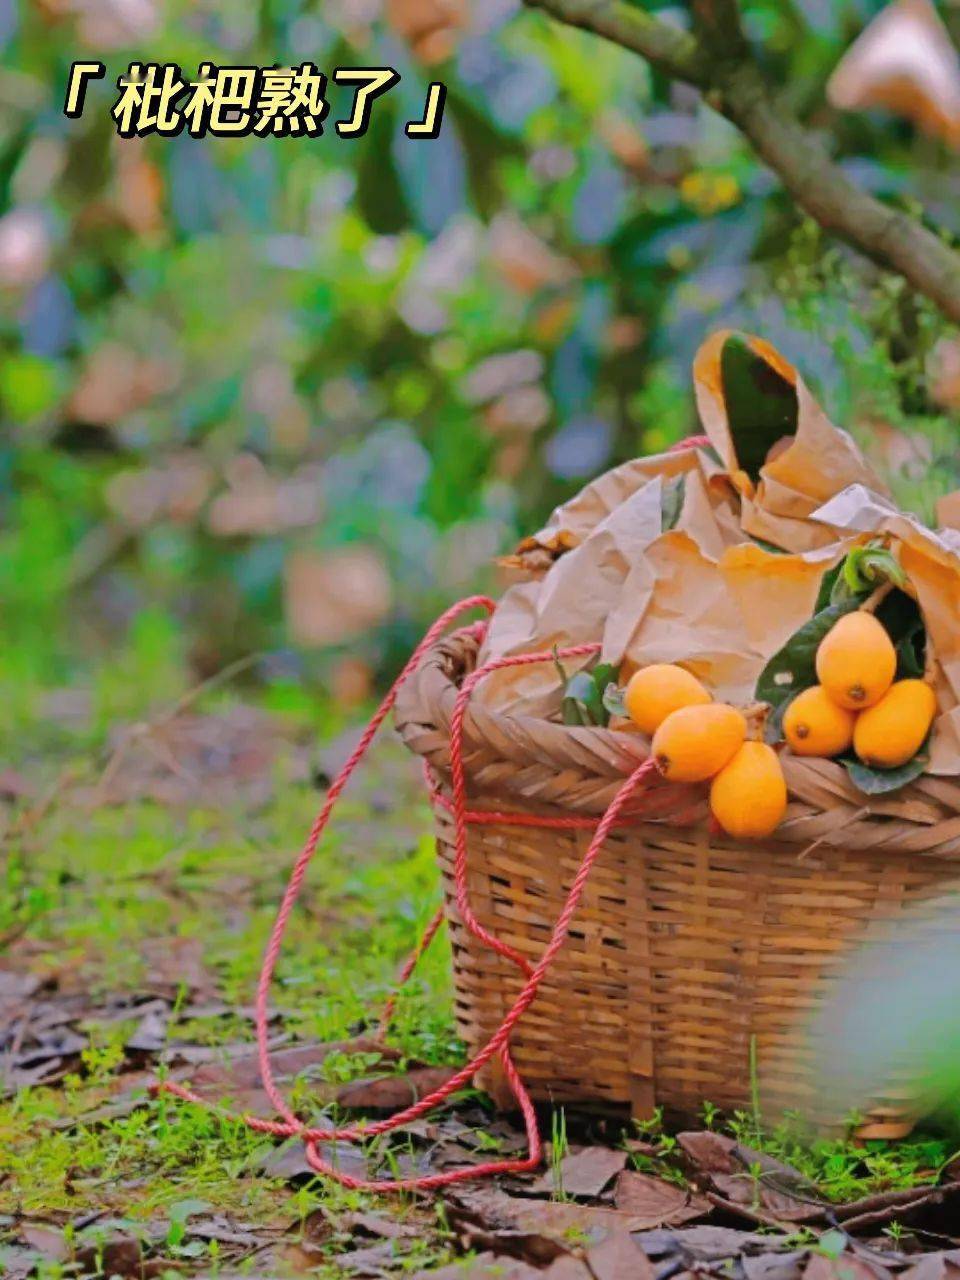 摘果,泡温泉……邂逅春日浪漫线路:湘南枇杷园——阿比布奇花世界